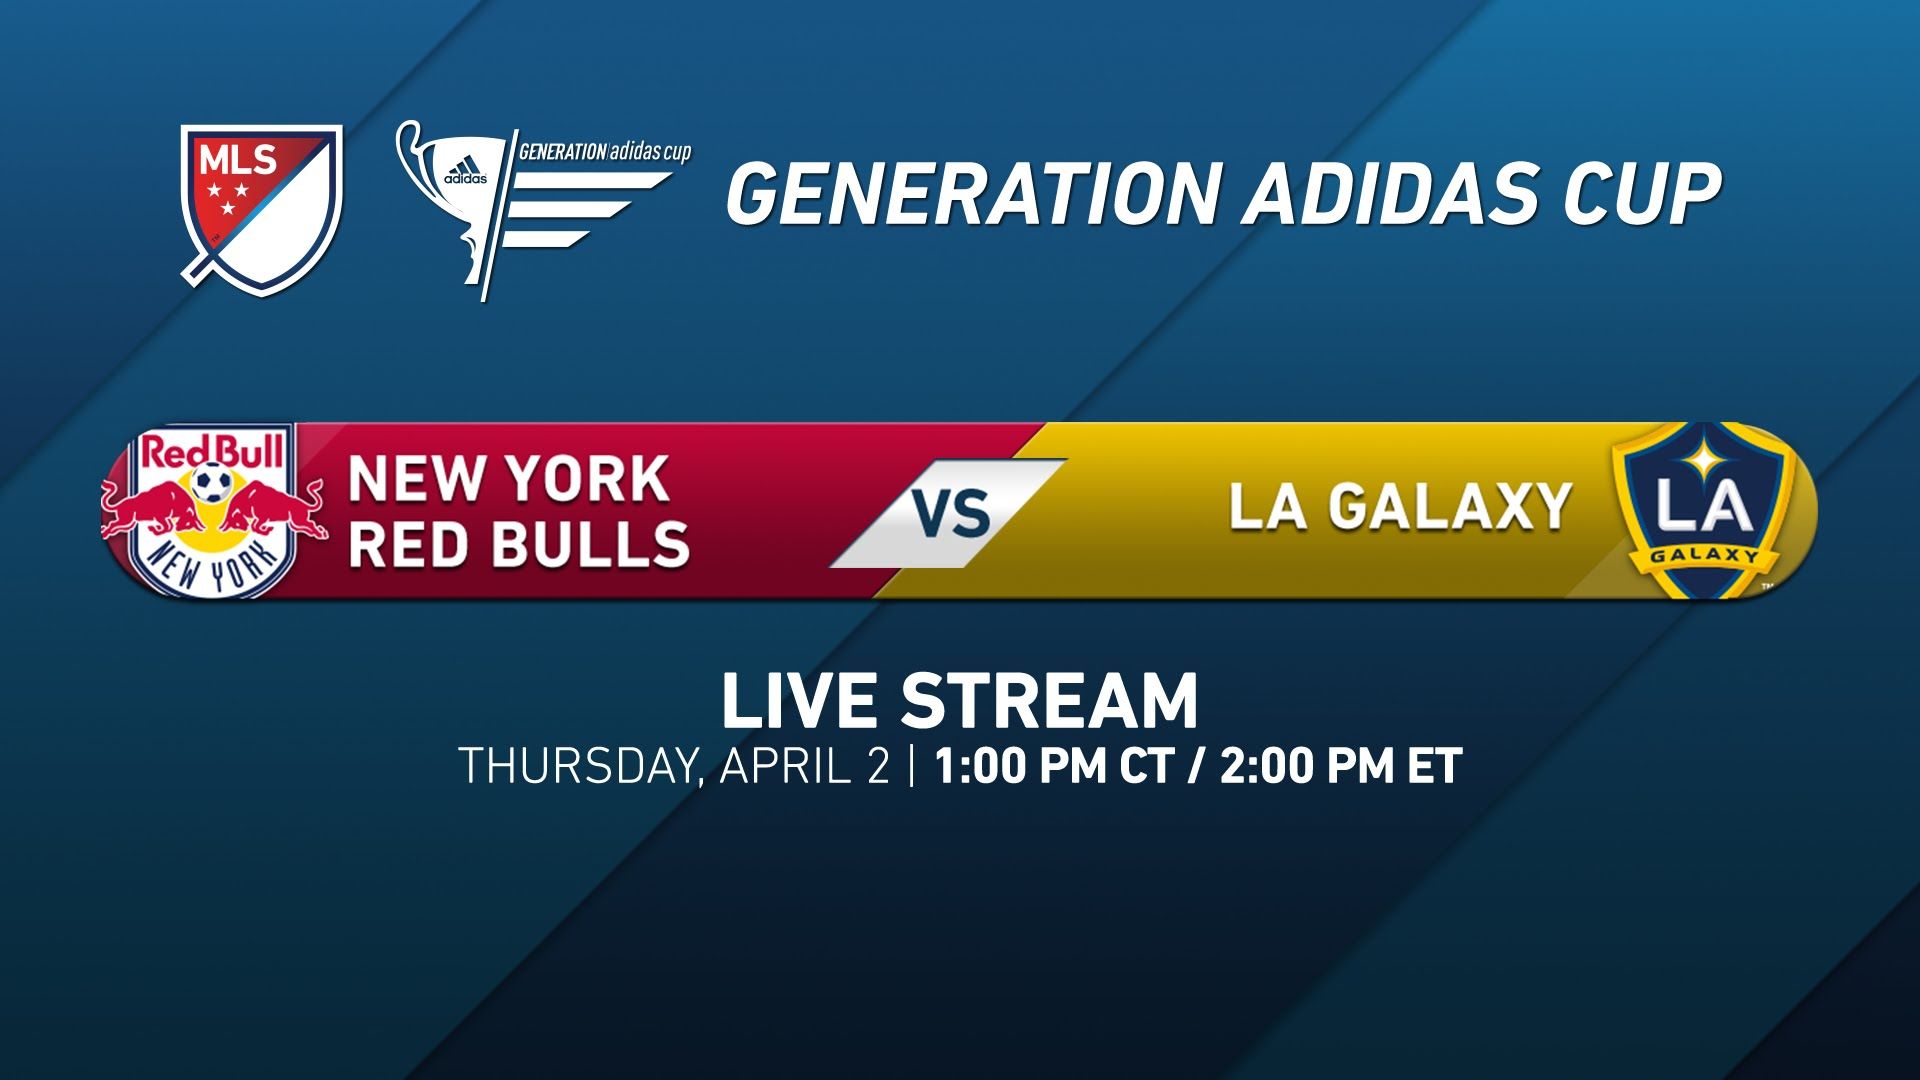 NY Red Bulls vs. LA Galaxy | Generation adidas 2015 - YouTube